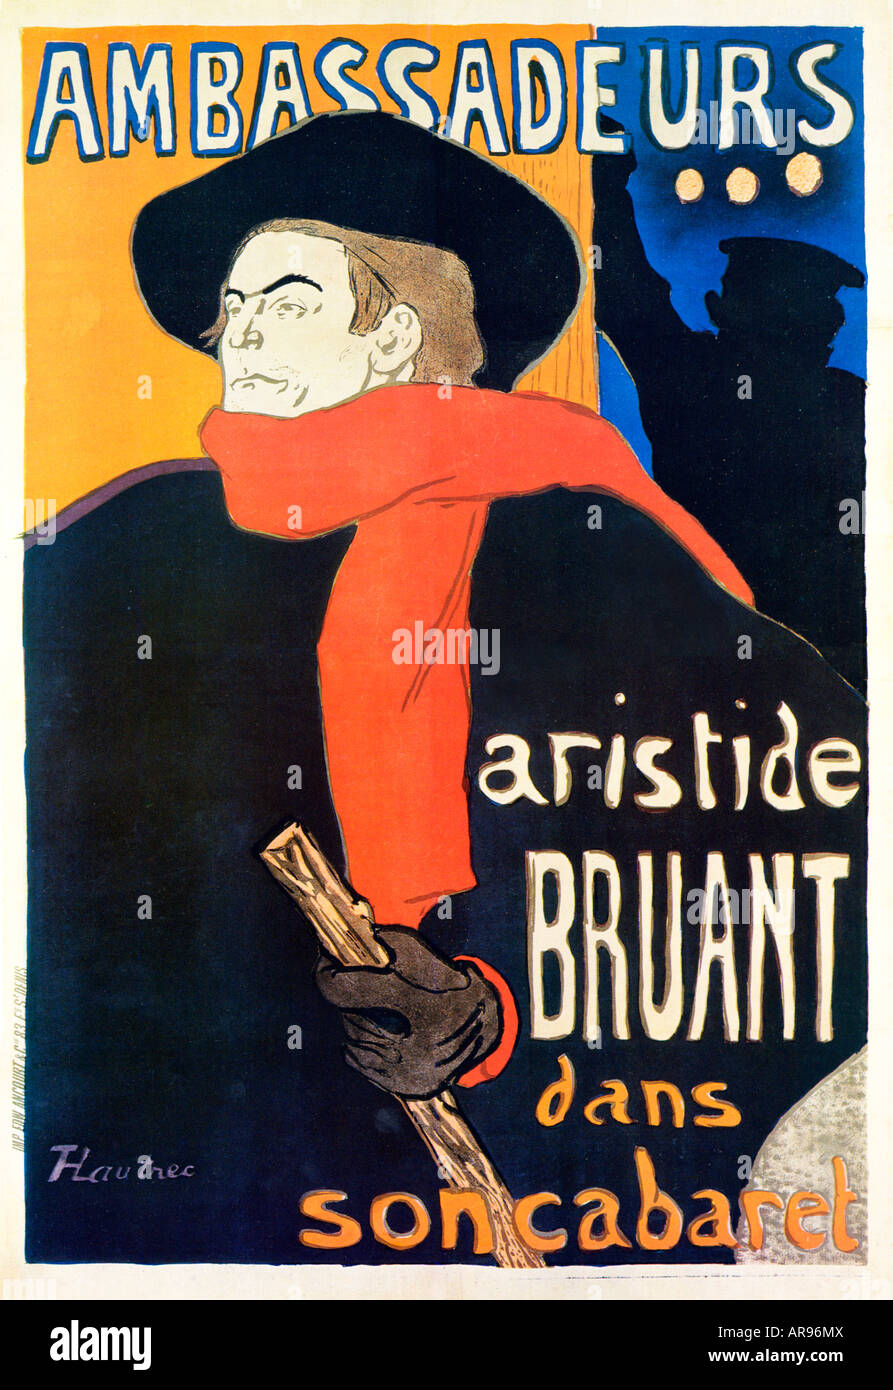 Ambassadeurs Aristide Bruant 1892 Cartel Art Nouveau de Henri de Toulouse Lautrec para el artista parisino del cabaret y el empresario Foto de stock